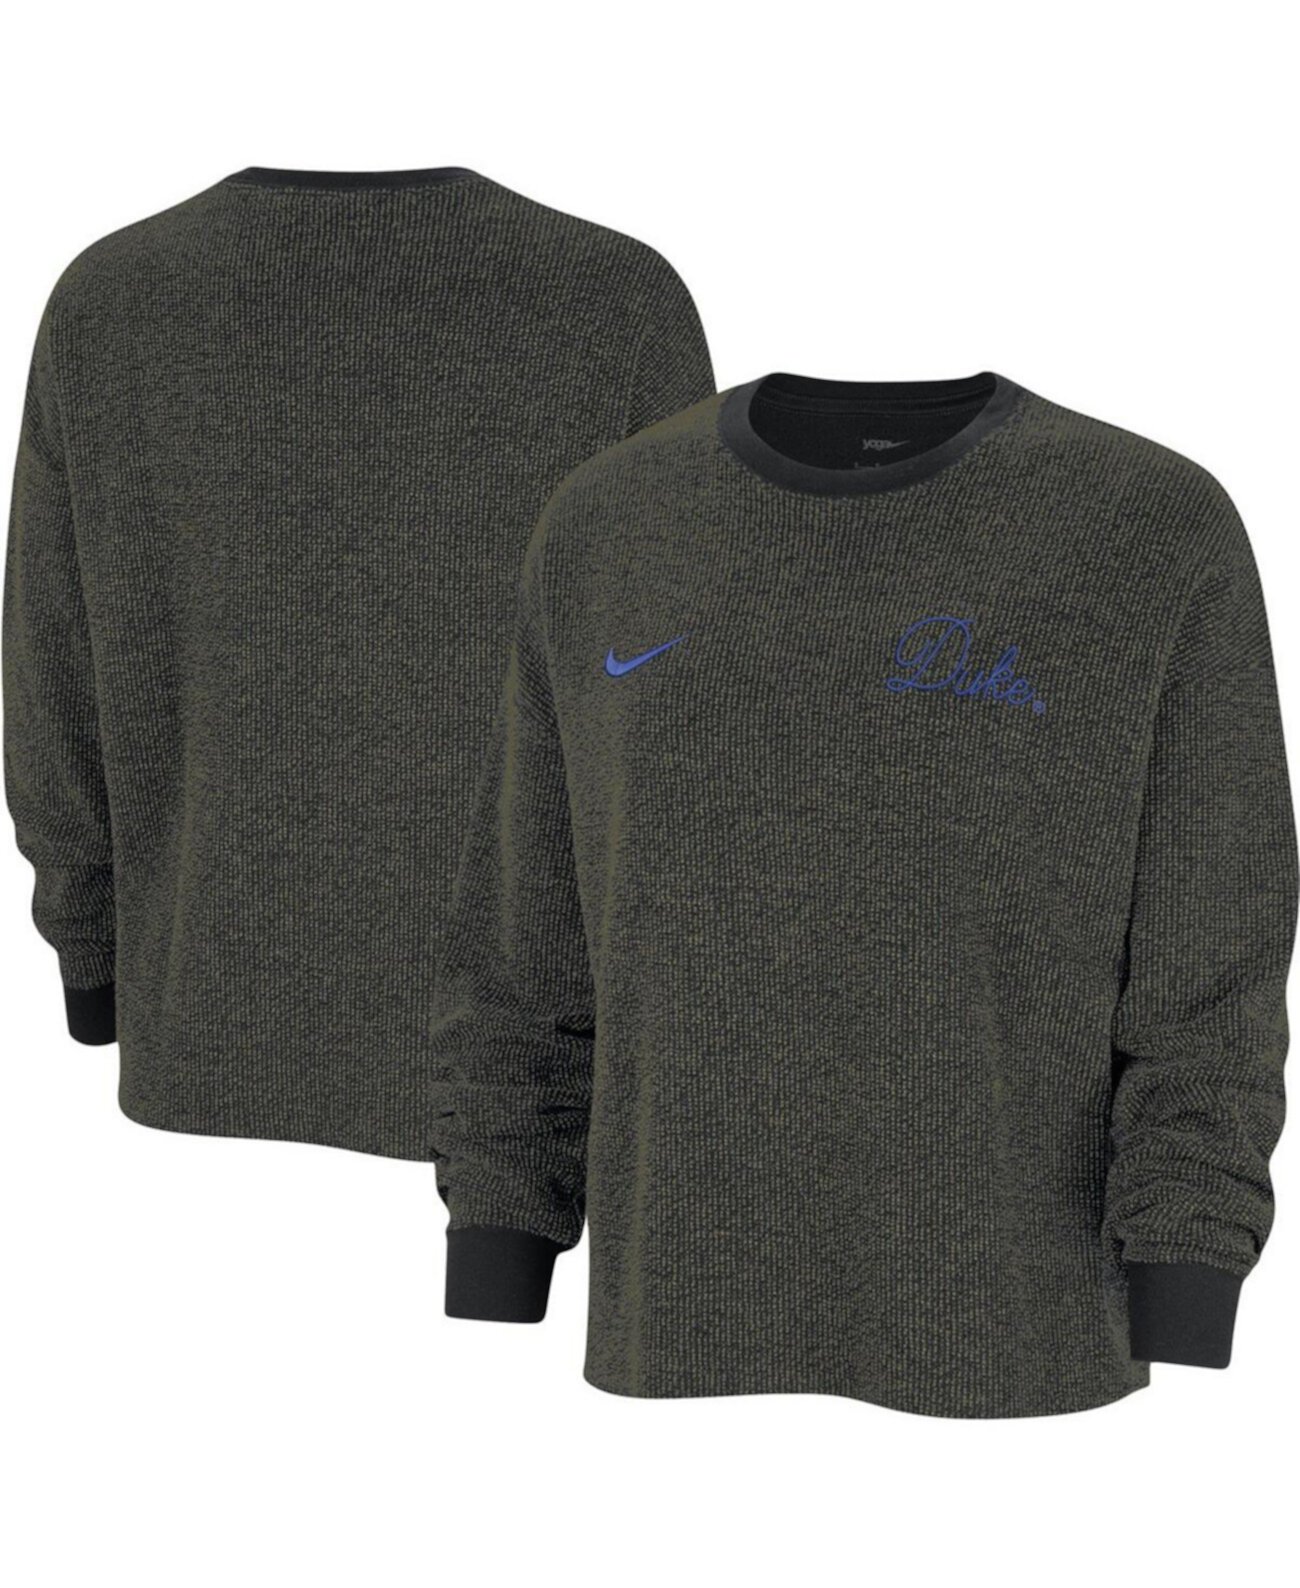 Женский черный пуловер с надписью Duke Blue Devils для йоги Nike